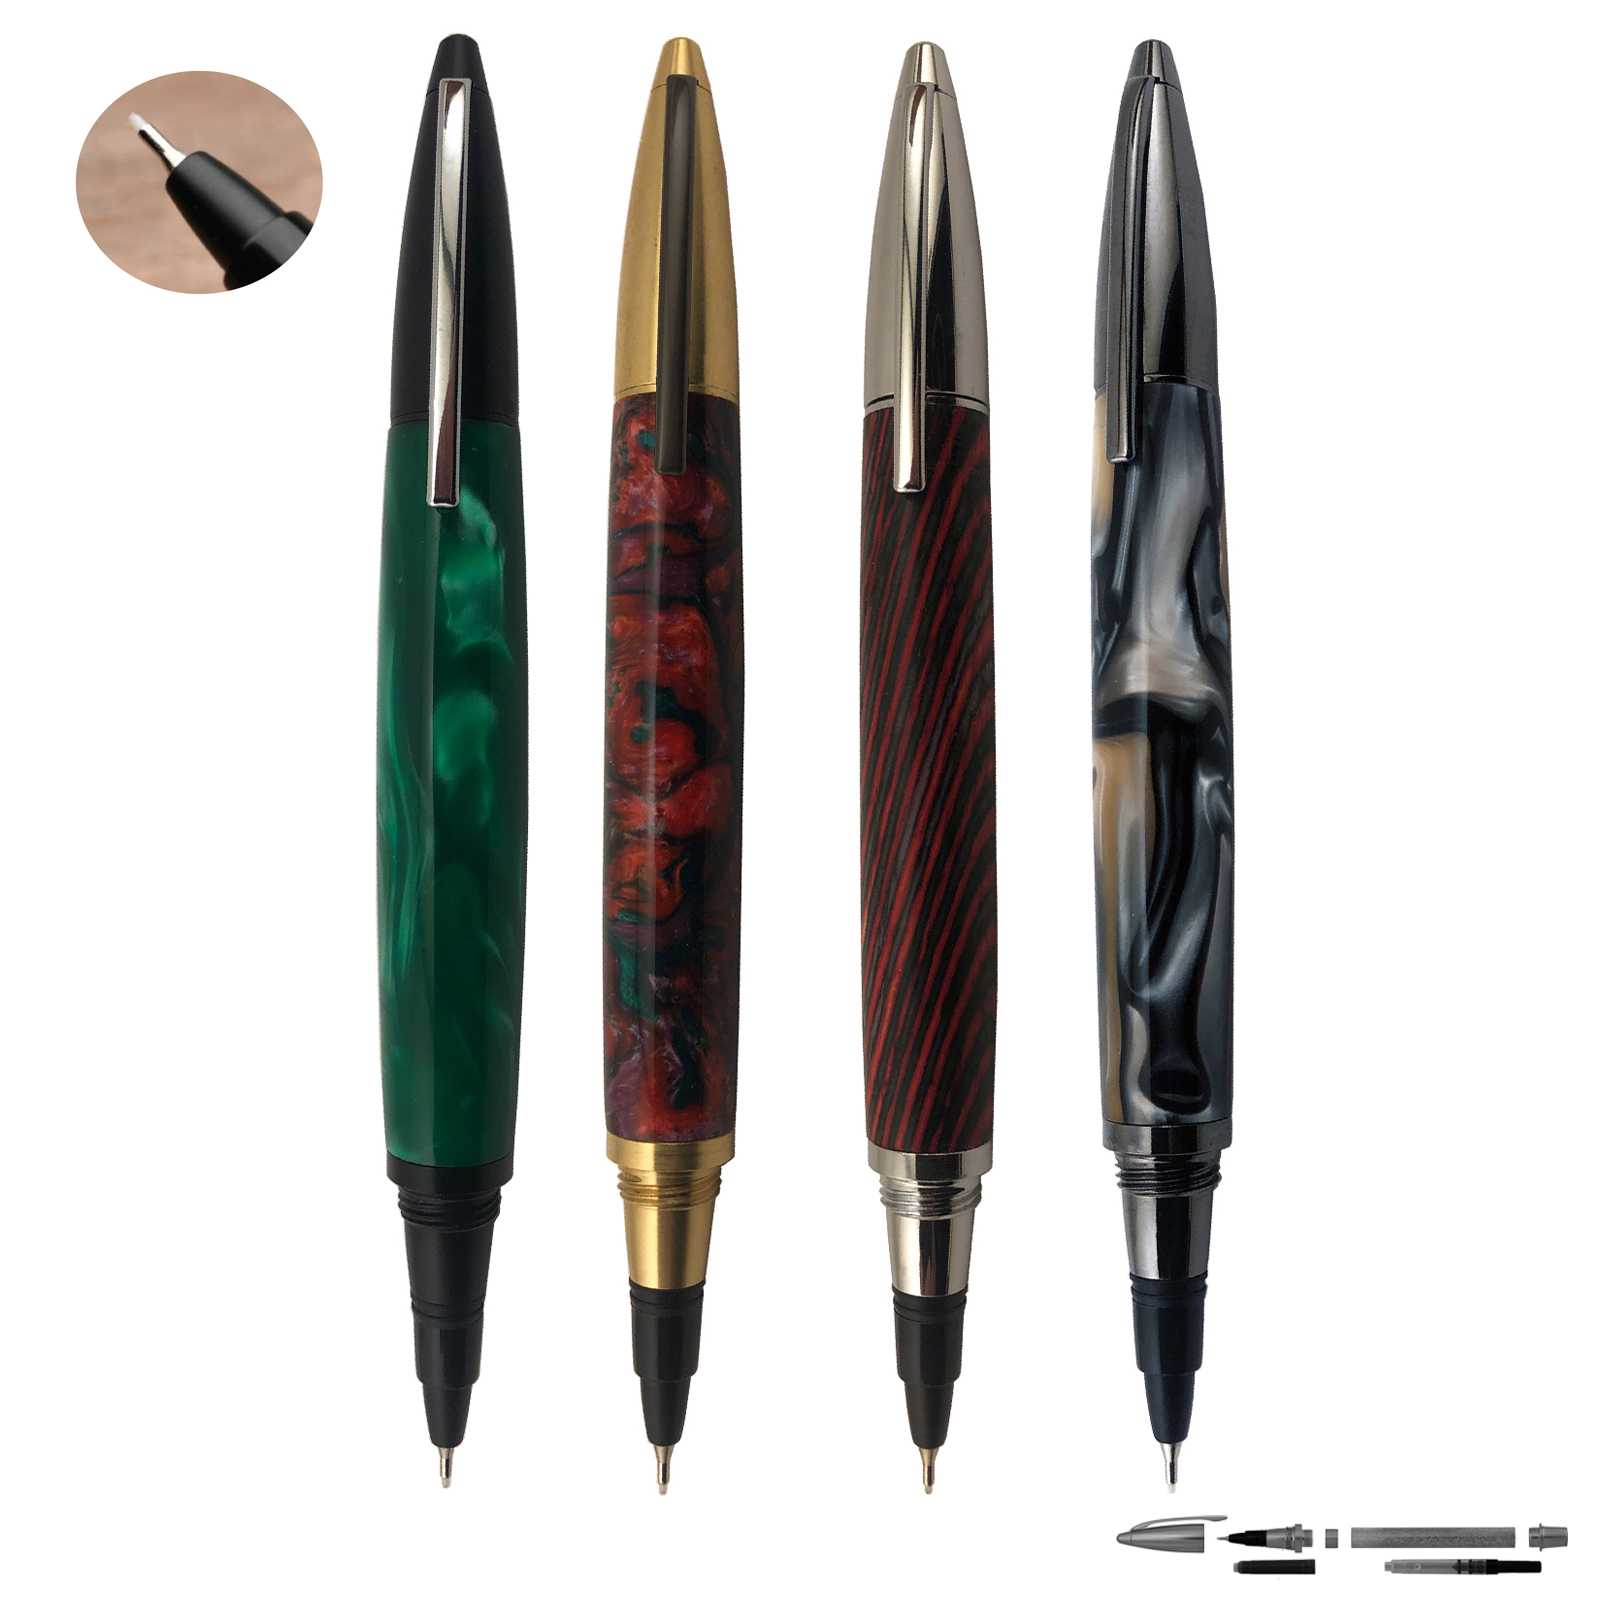 10-Count Mini Felt Tip Pens, Classic Colors